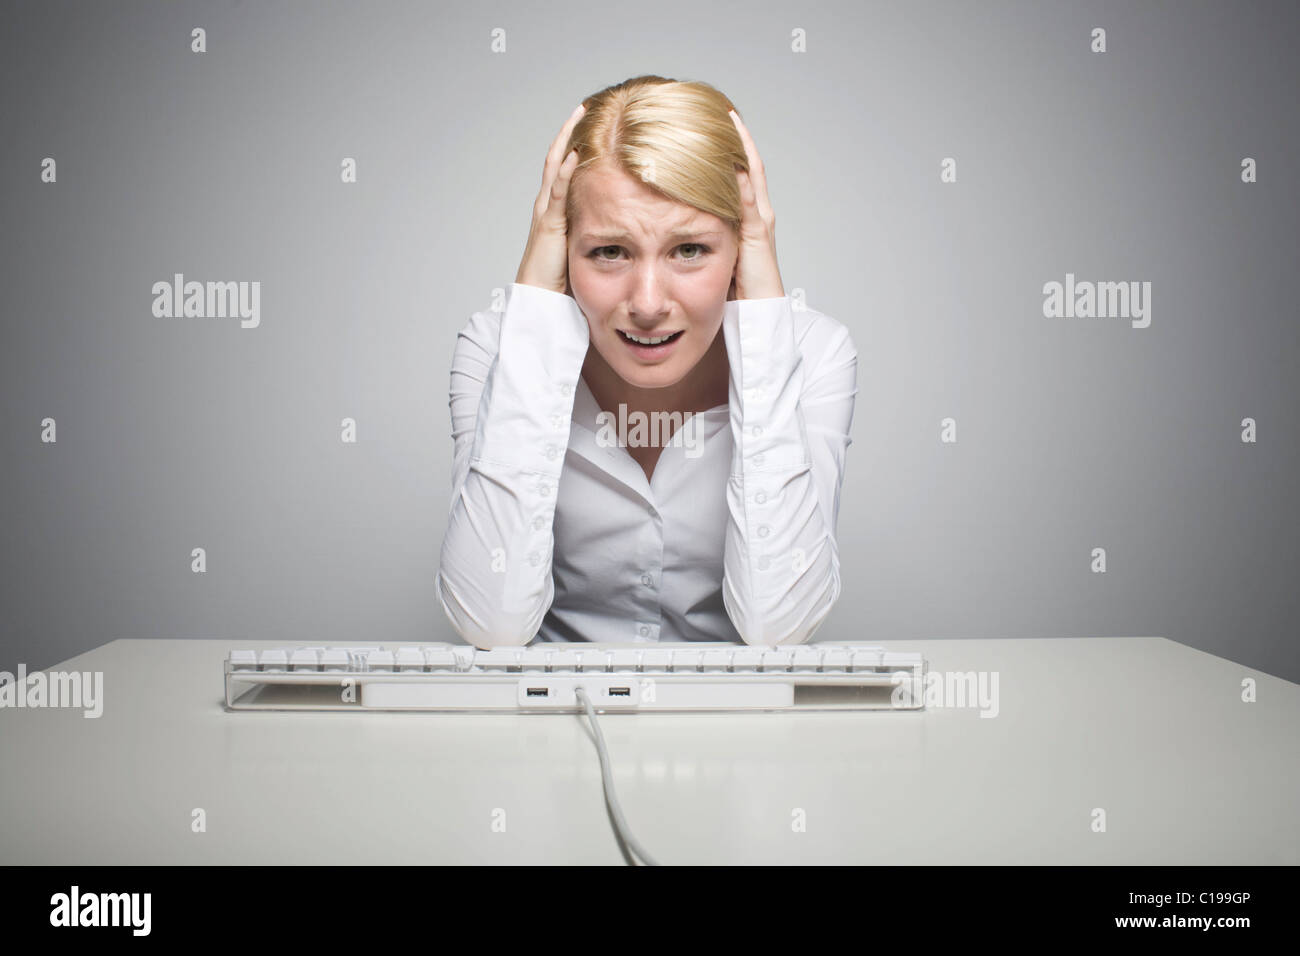 Mujer rubia joven sentado delante de un teclado de ordenador, desesperada Foto de stock